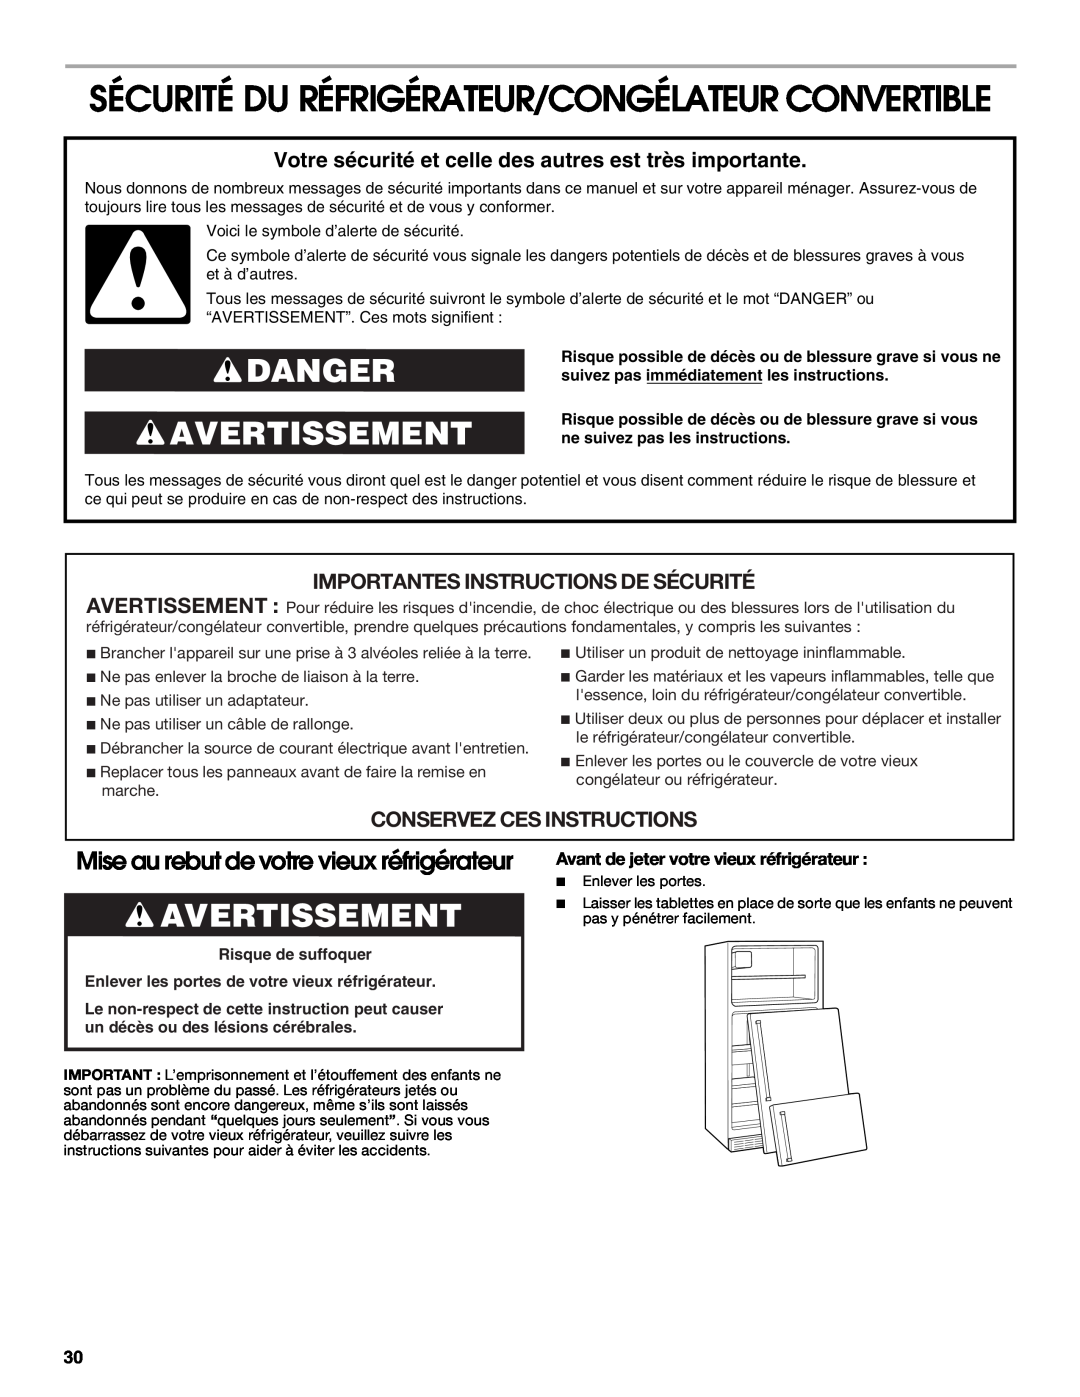 Whirlpool GAFZ21XXMK00 Sécurité Du Réfrigérateur/Congélateur Convertible, Danger Avertissement, Conservez Ces Instructions 